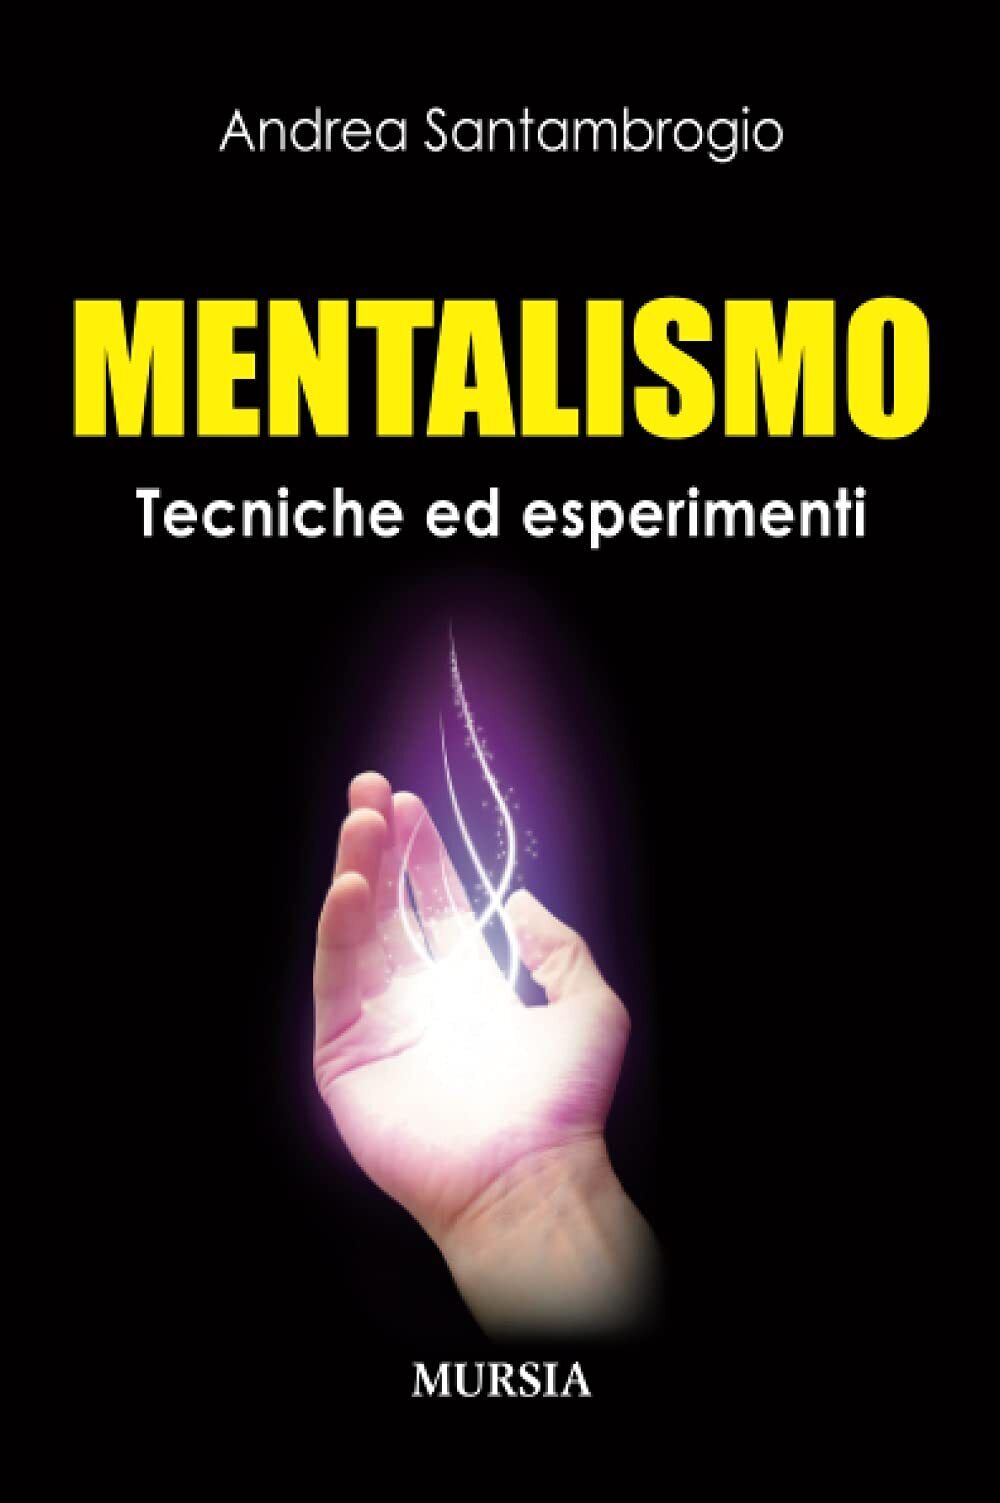 Mentalismo: Tecniche ed esperimenti - Andrea Santambrogio - Mursia, 2014